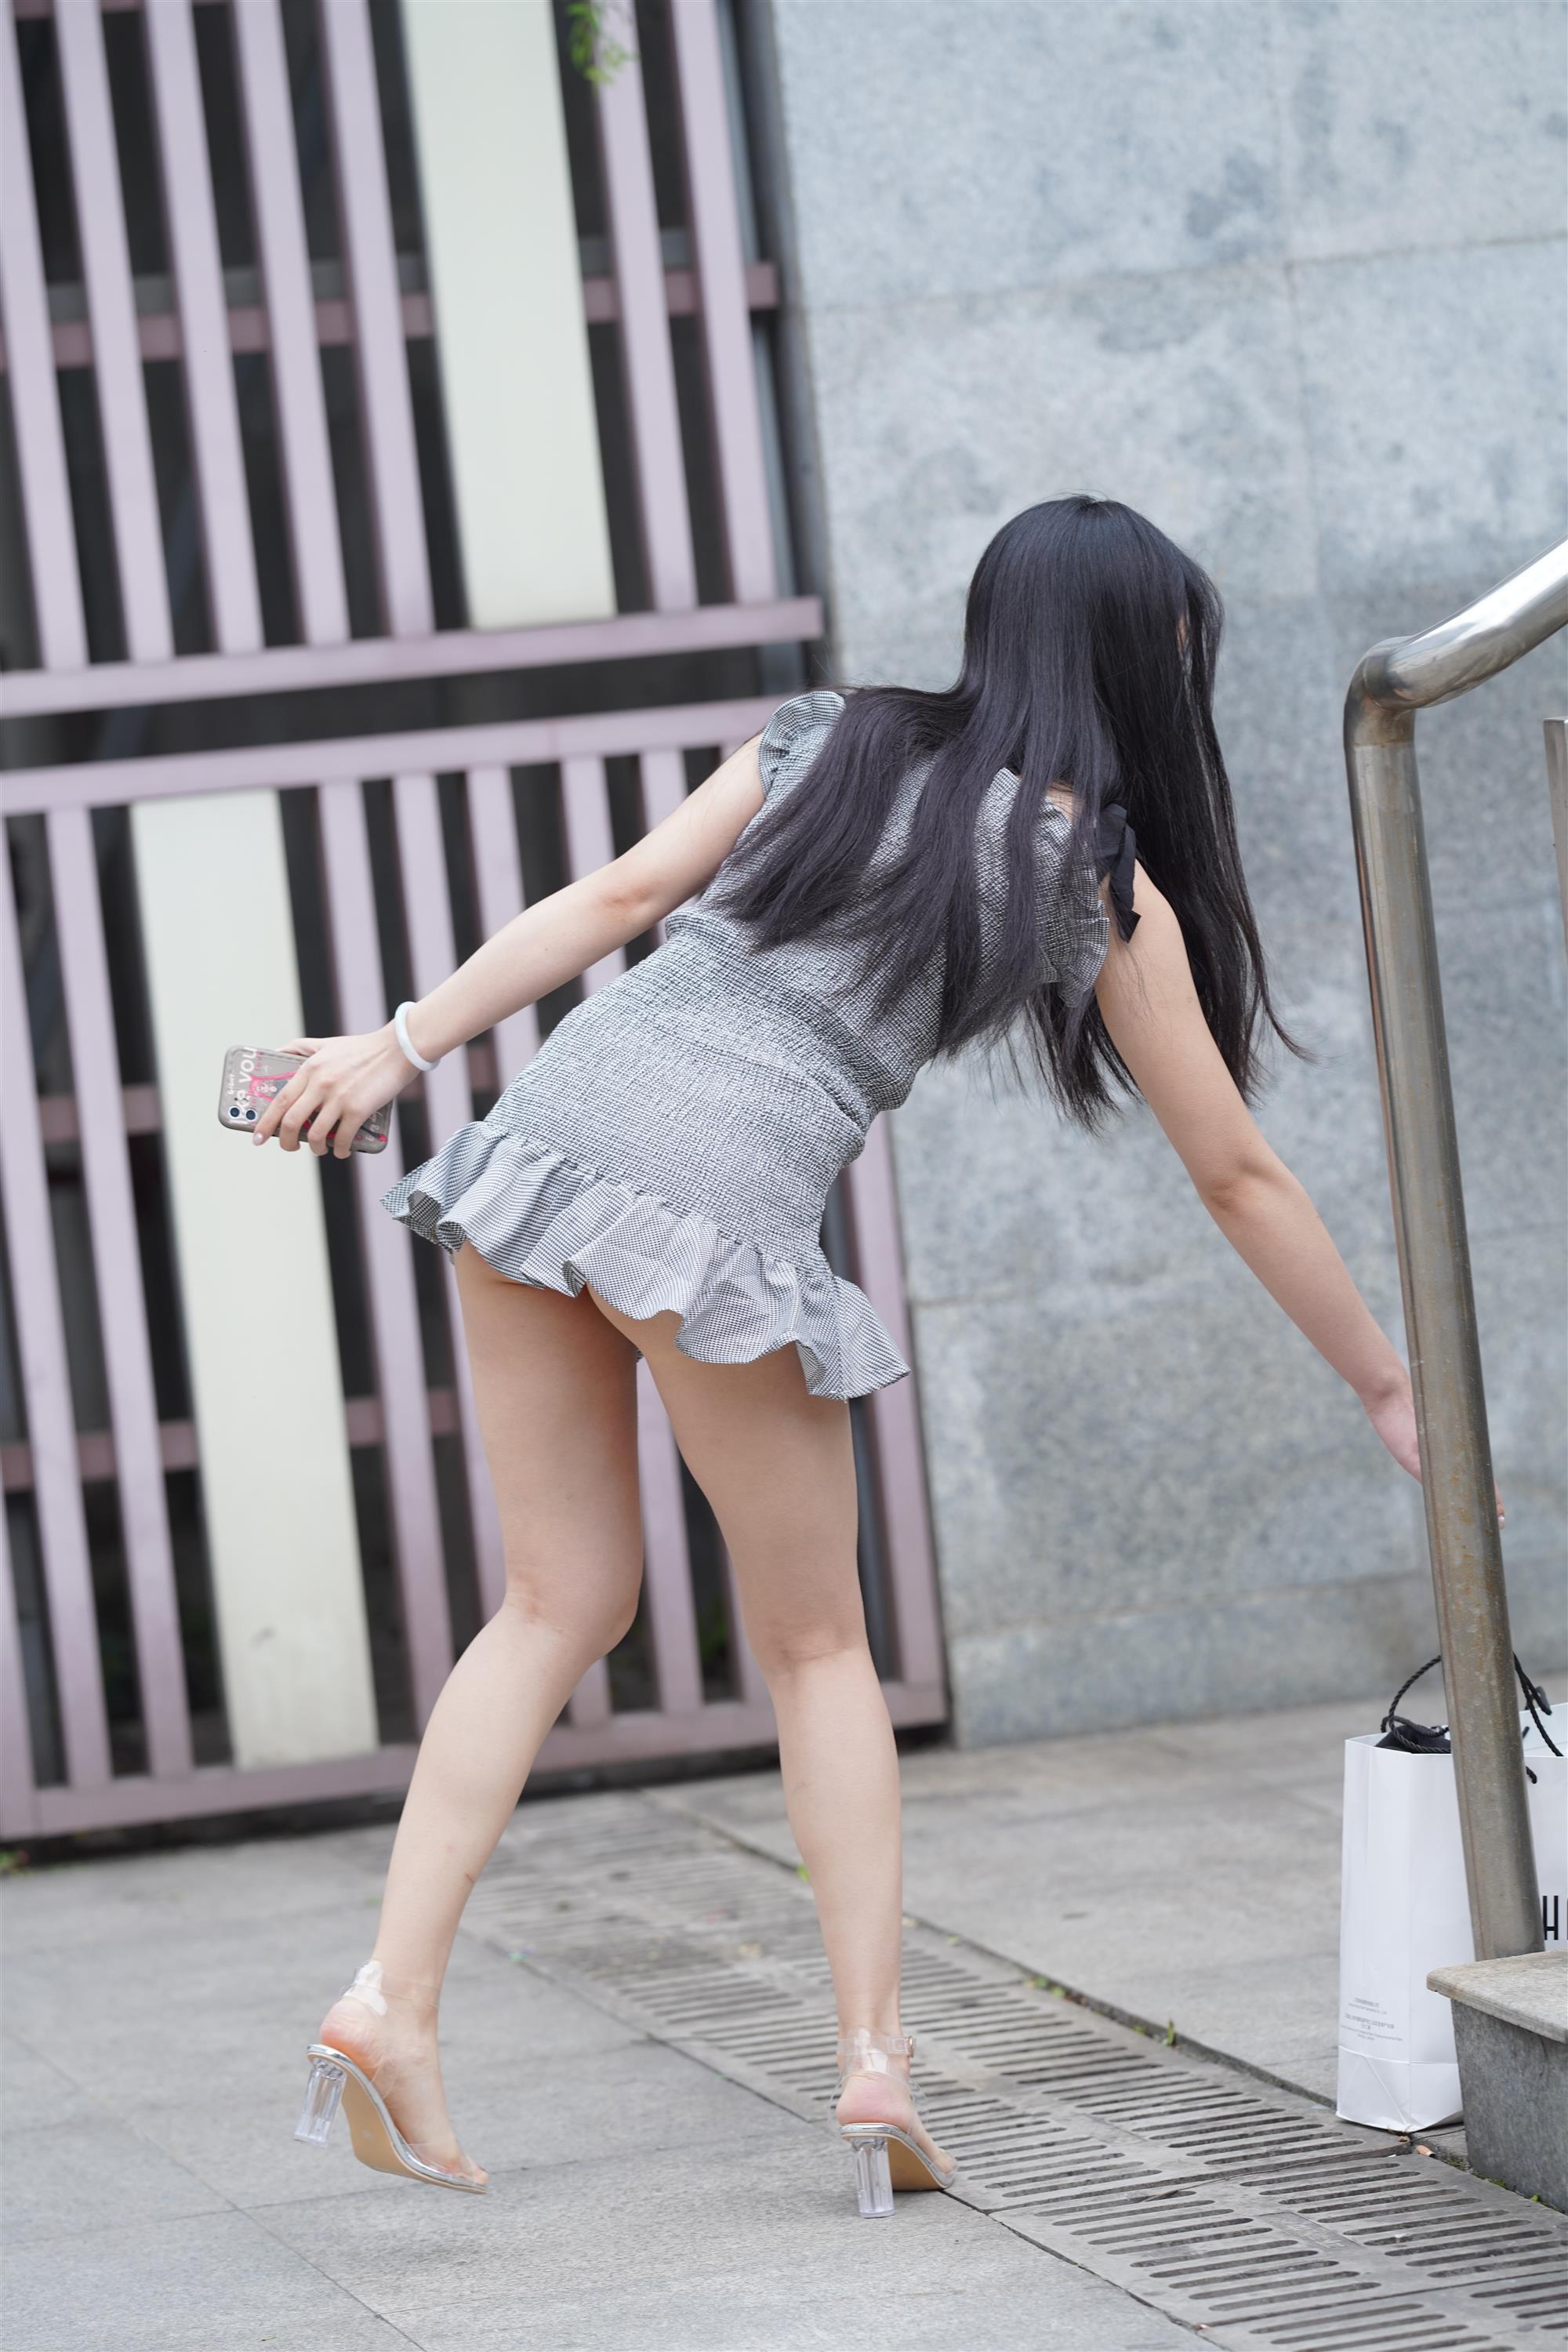 Street Girl In Short Skirt - 264.jpg